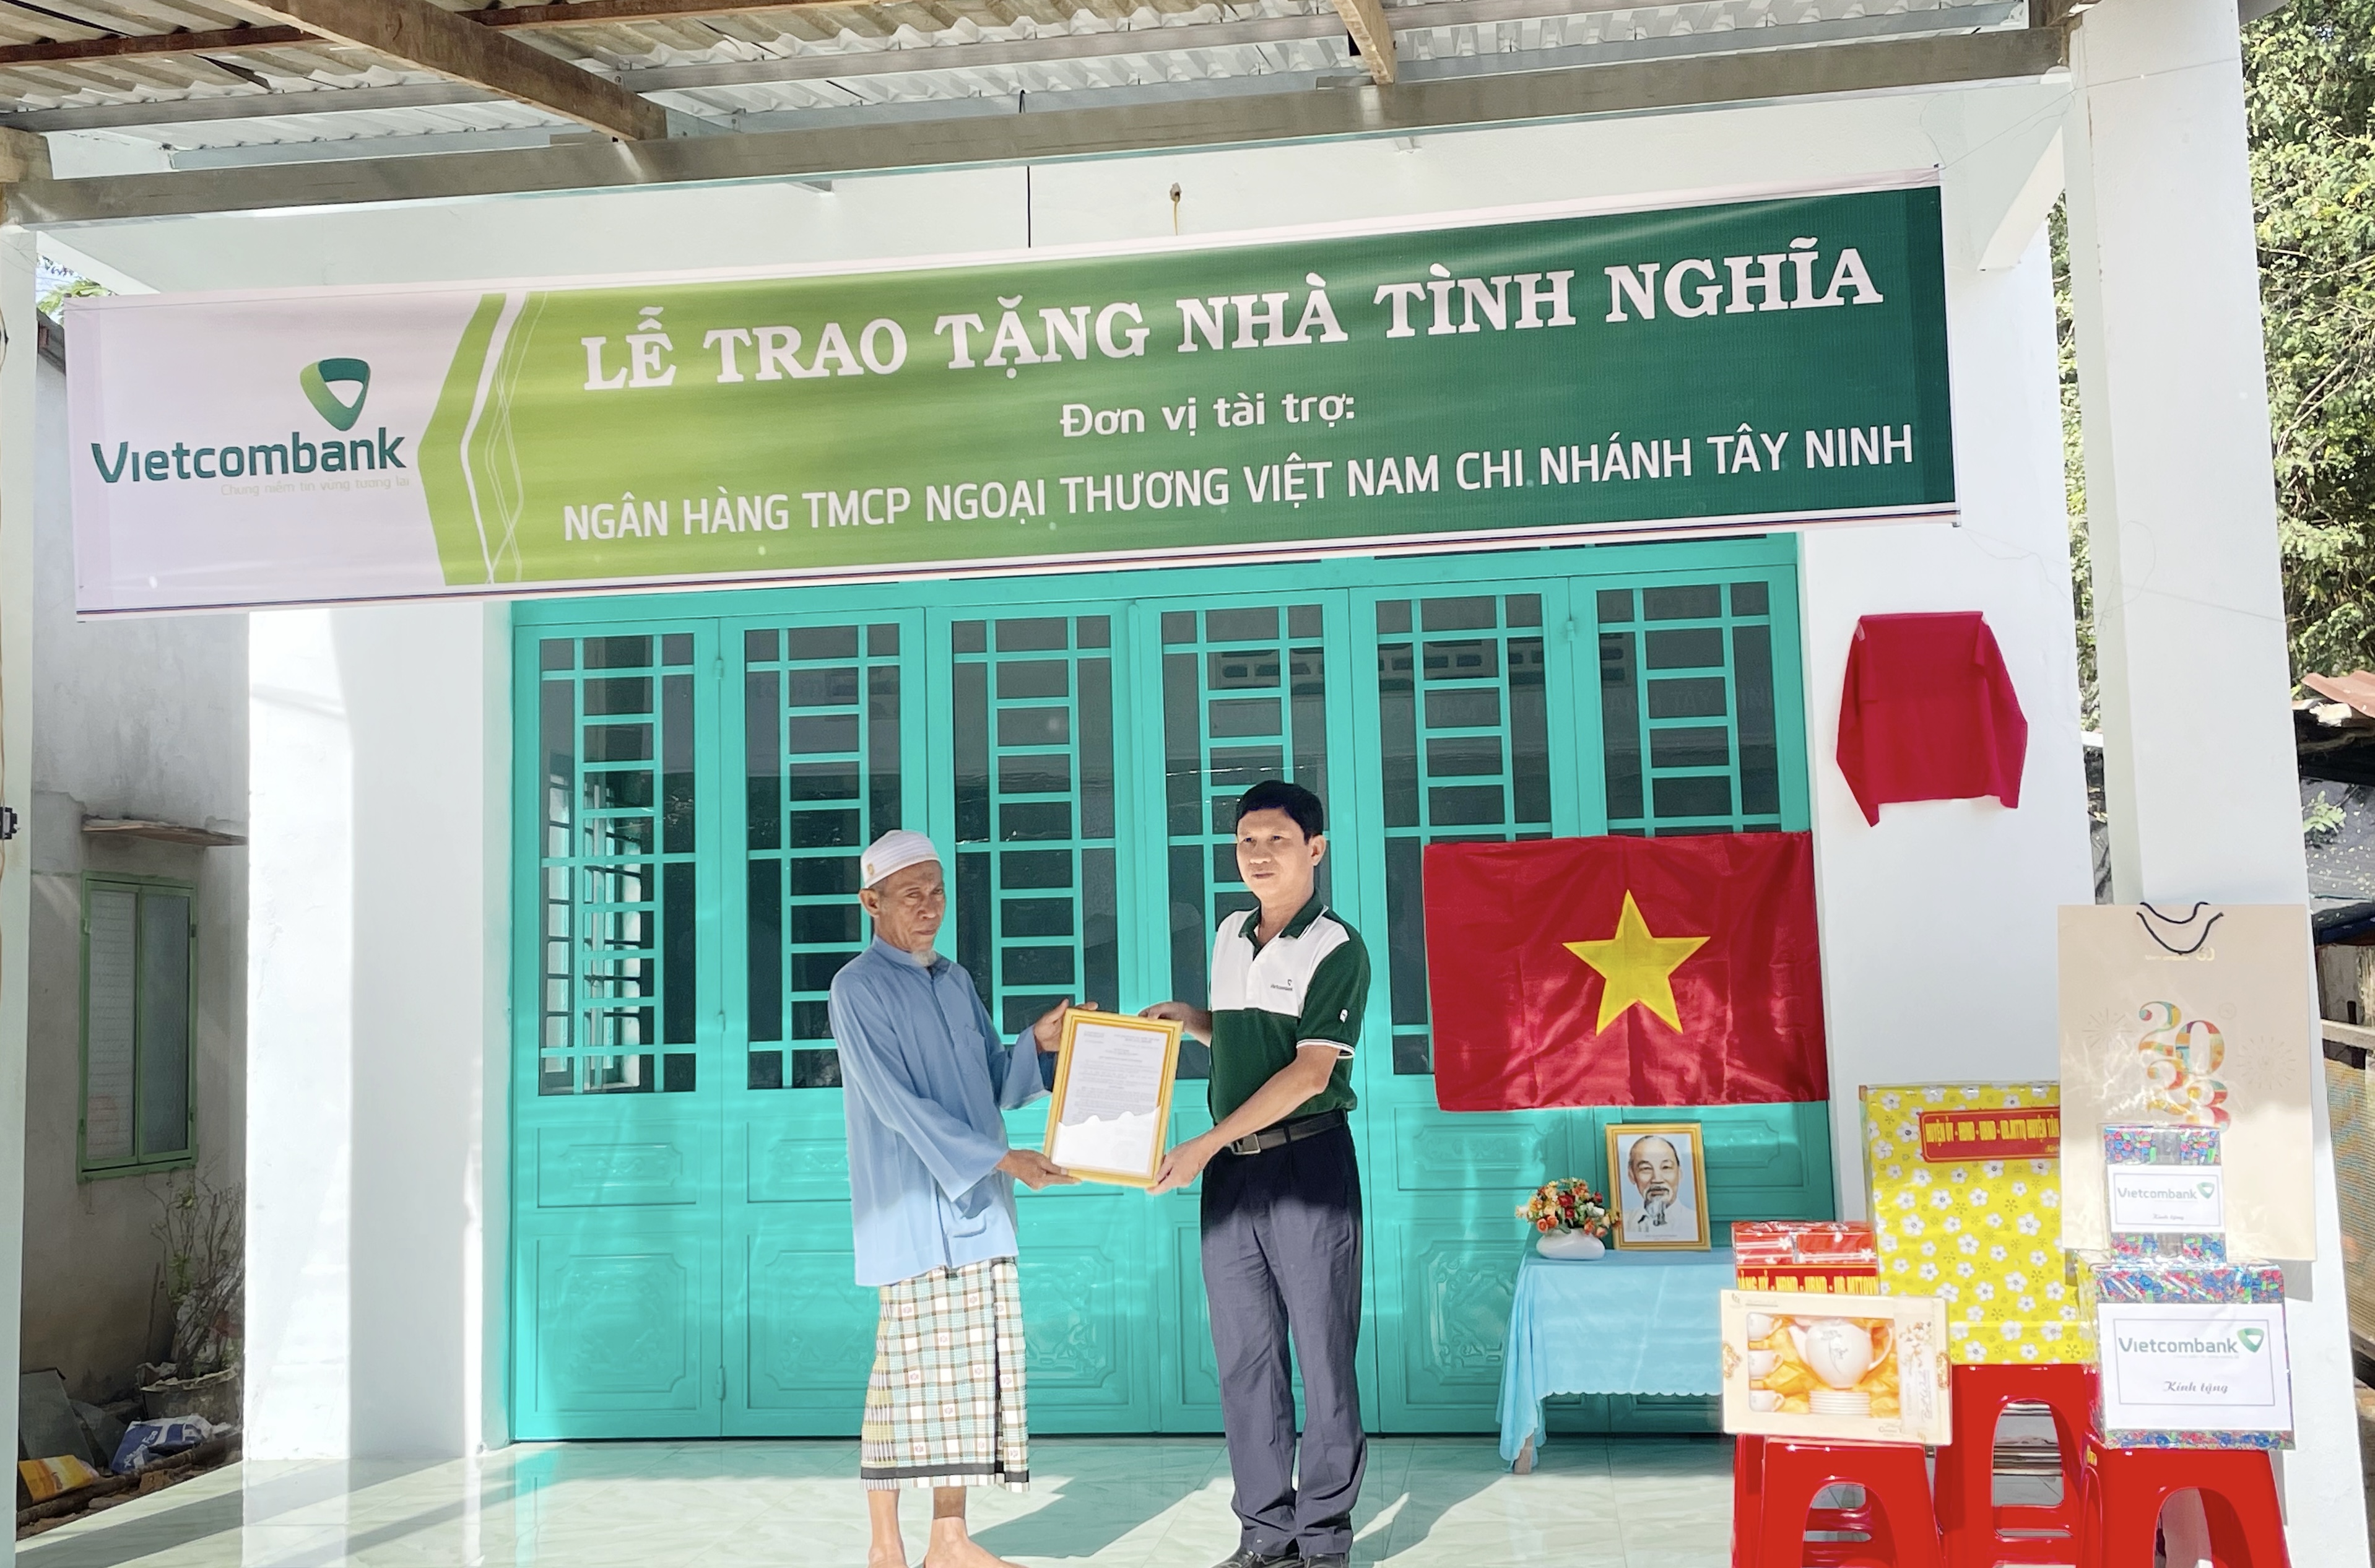 Vietcombank Tây Ninh trao tặng nhà tình nghĩa, nhà đại đoàn kết cho hộ nghèo